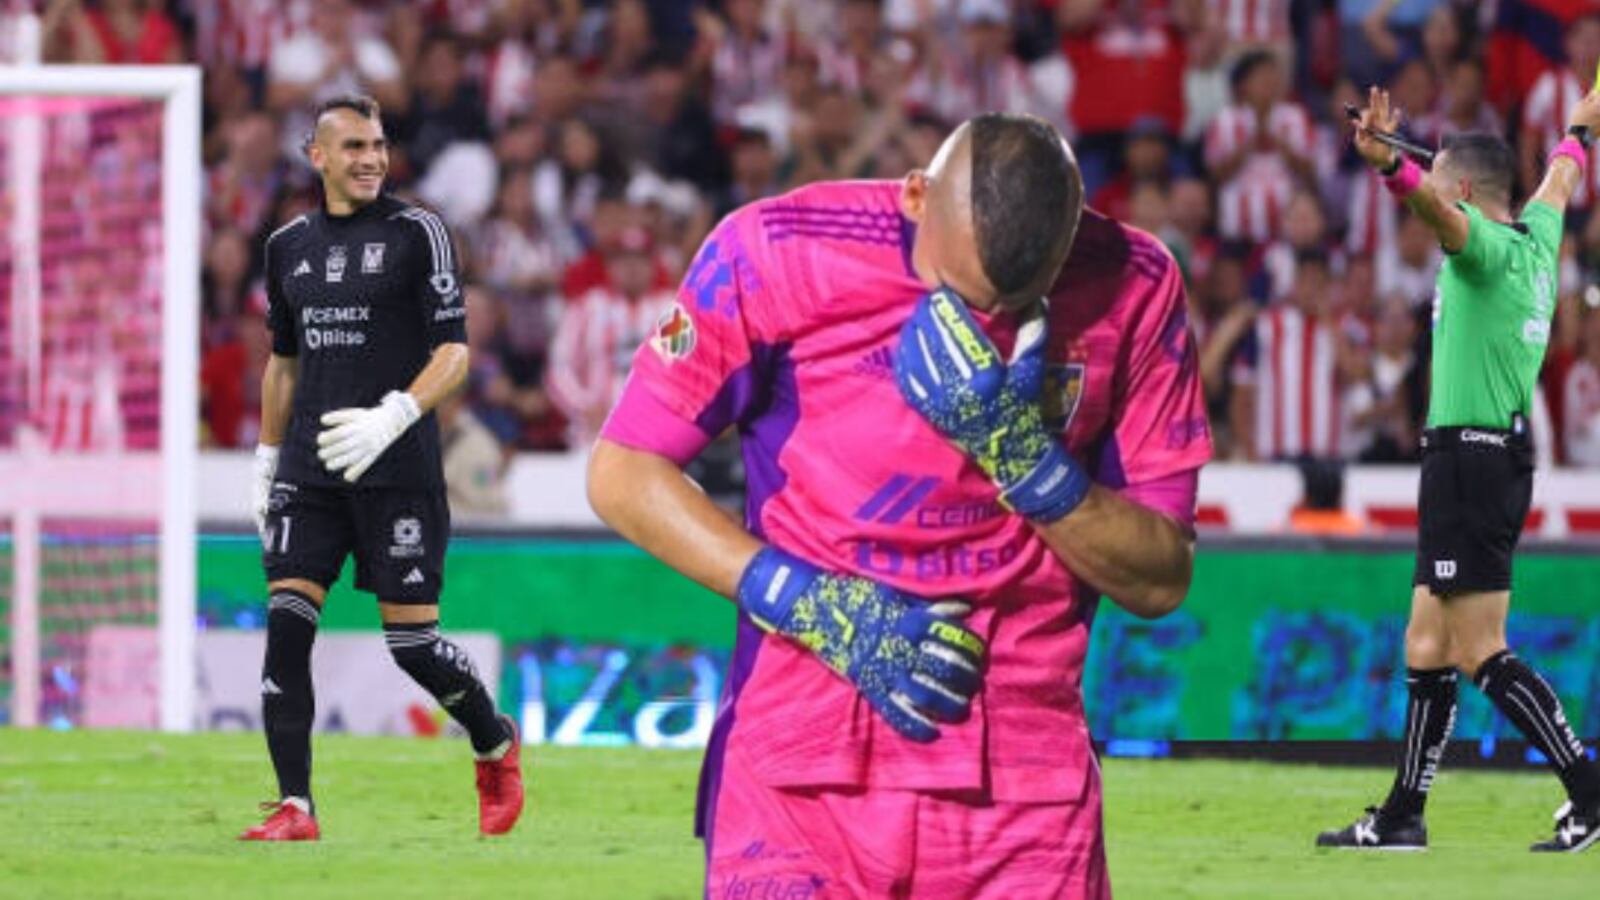 (VIDEO) Chivas vs Tigres, lo que hizo Guzmán a Hernández y por eso lo amonestó